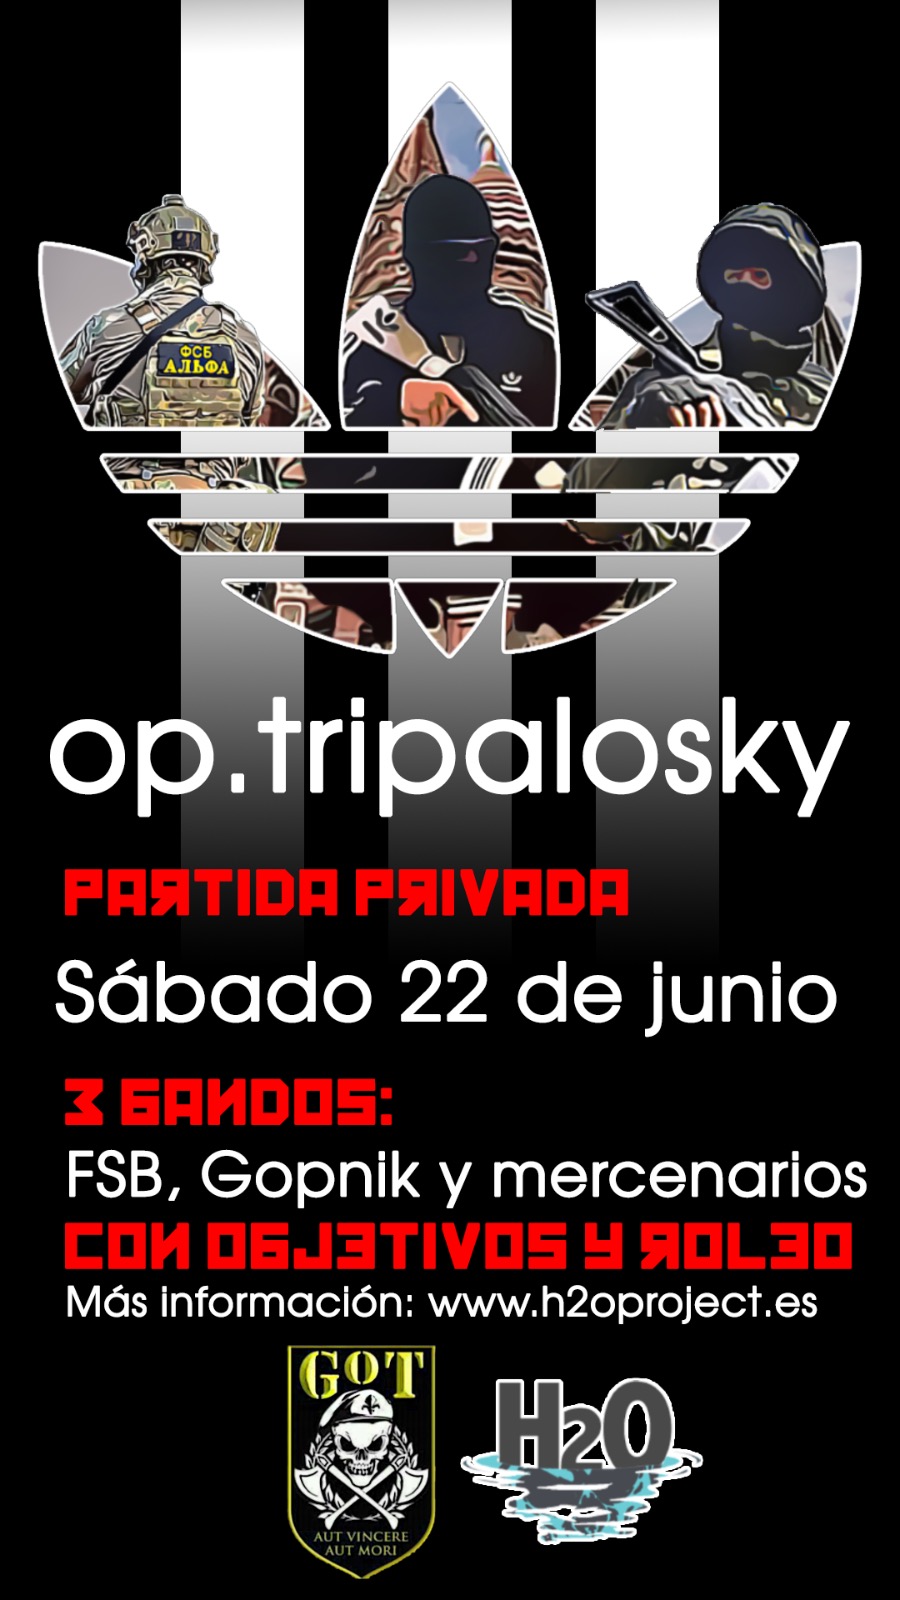 Partida privada GOT Op. Tripalosky, sábado 22 de Junio en Vinalesa Img-2010